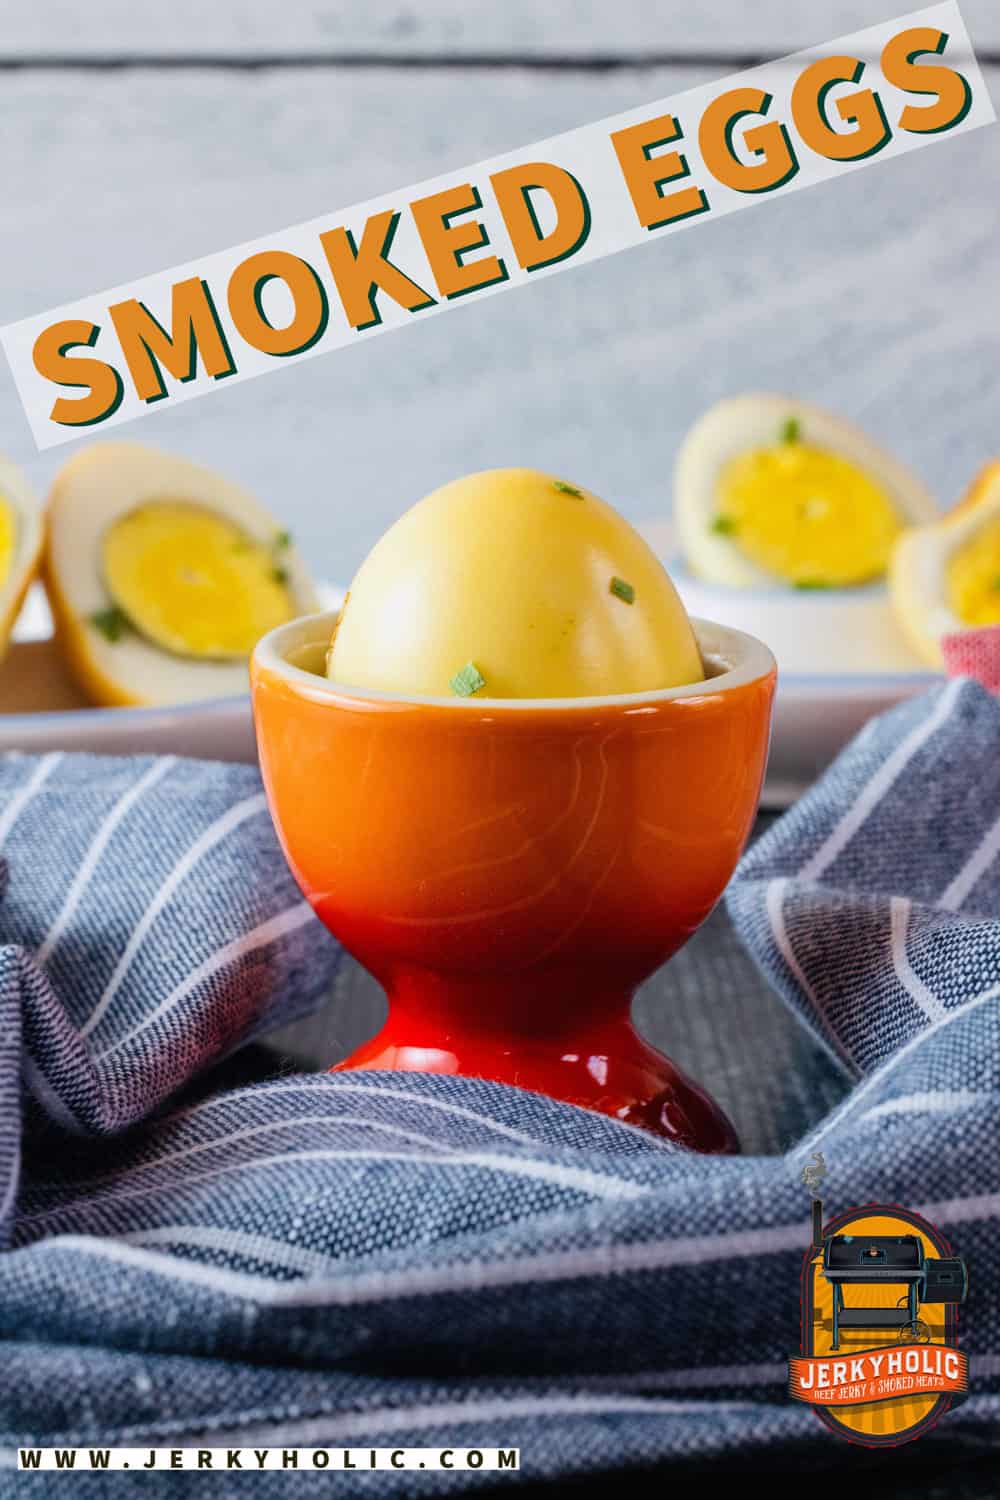 How to Smoke Eggs